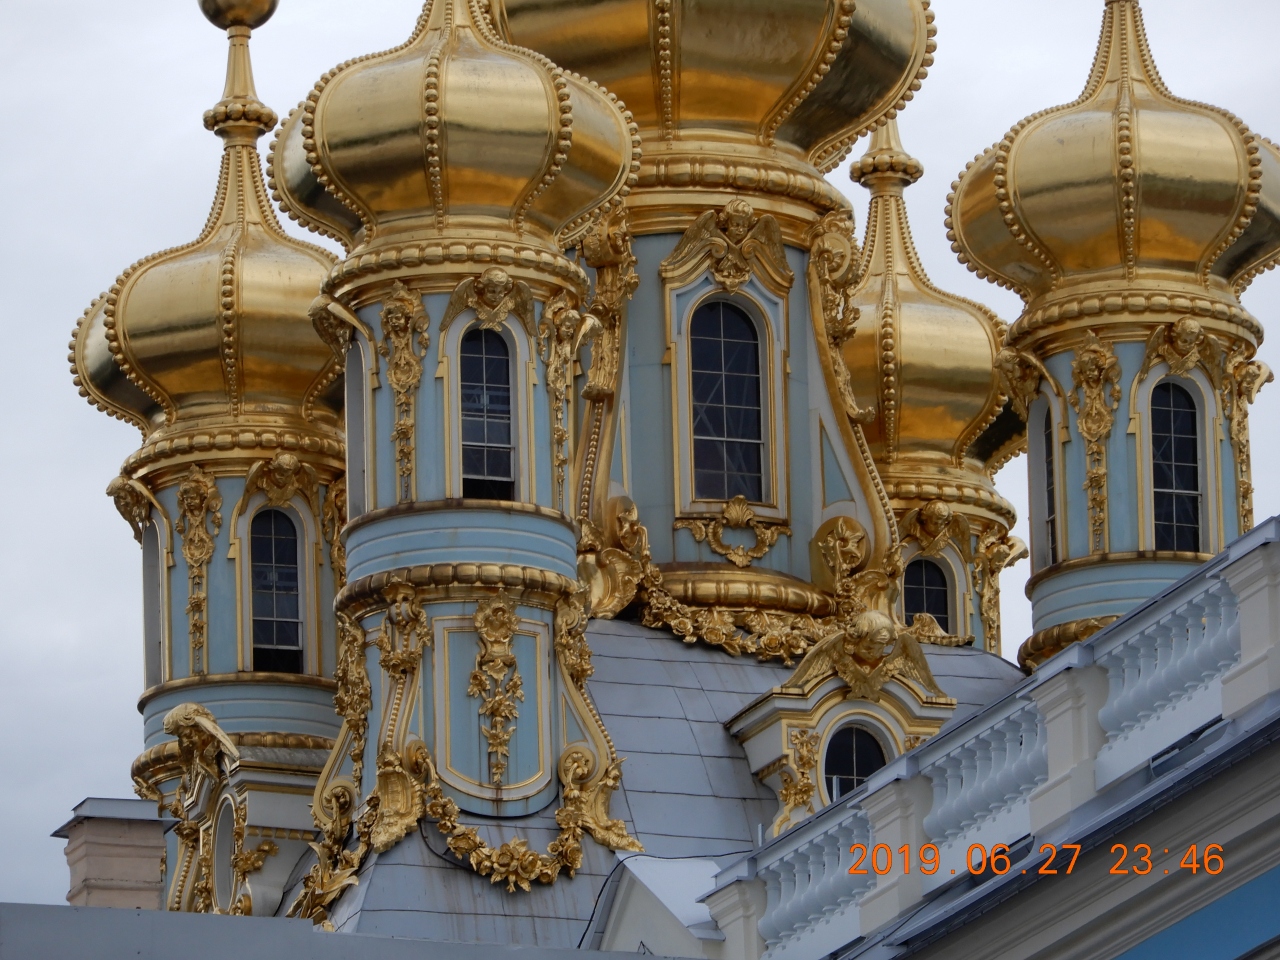 宮殿 世界遺産 エカテリーナ宮殿 一部モスク風外観も ロシア サンクトペテルブルク 写真追加版 サンクトペテルブルク ロシア の旅行記 ブログ By Timeupさん フォートラベル